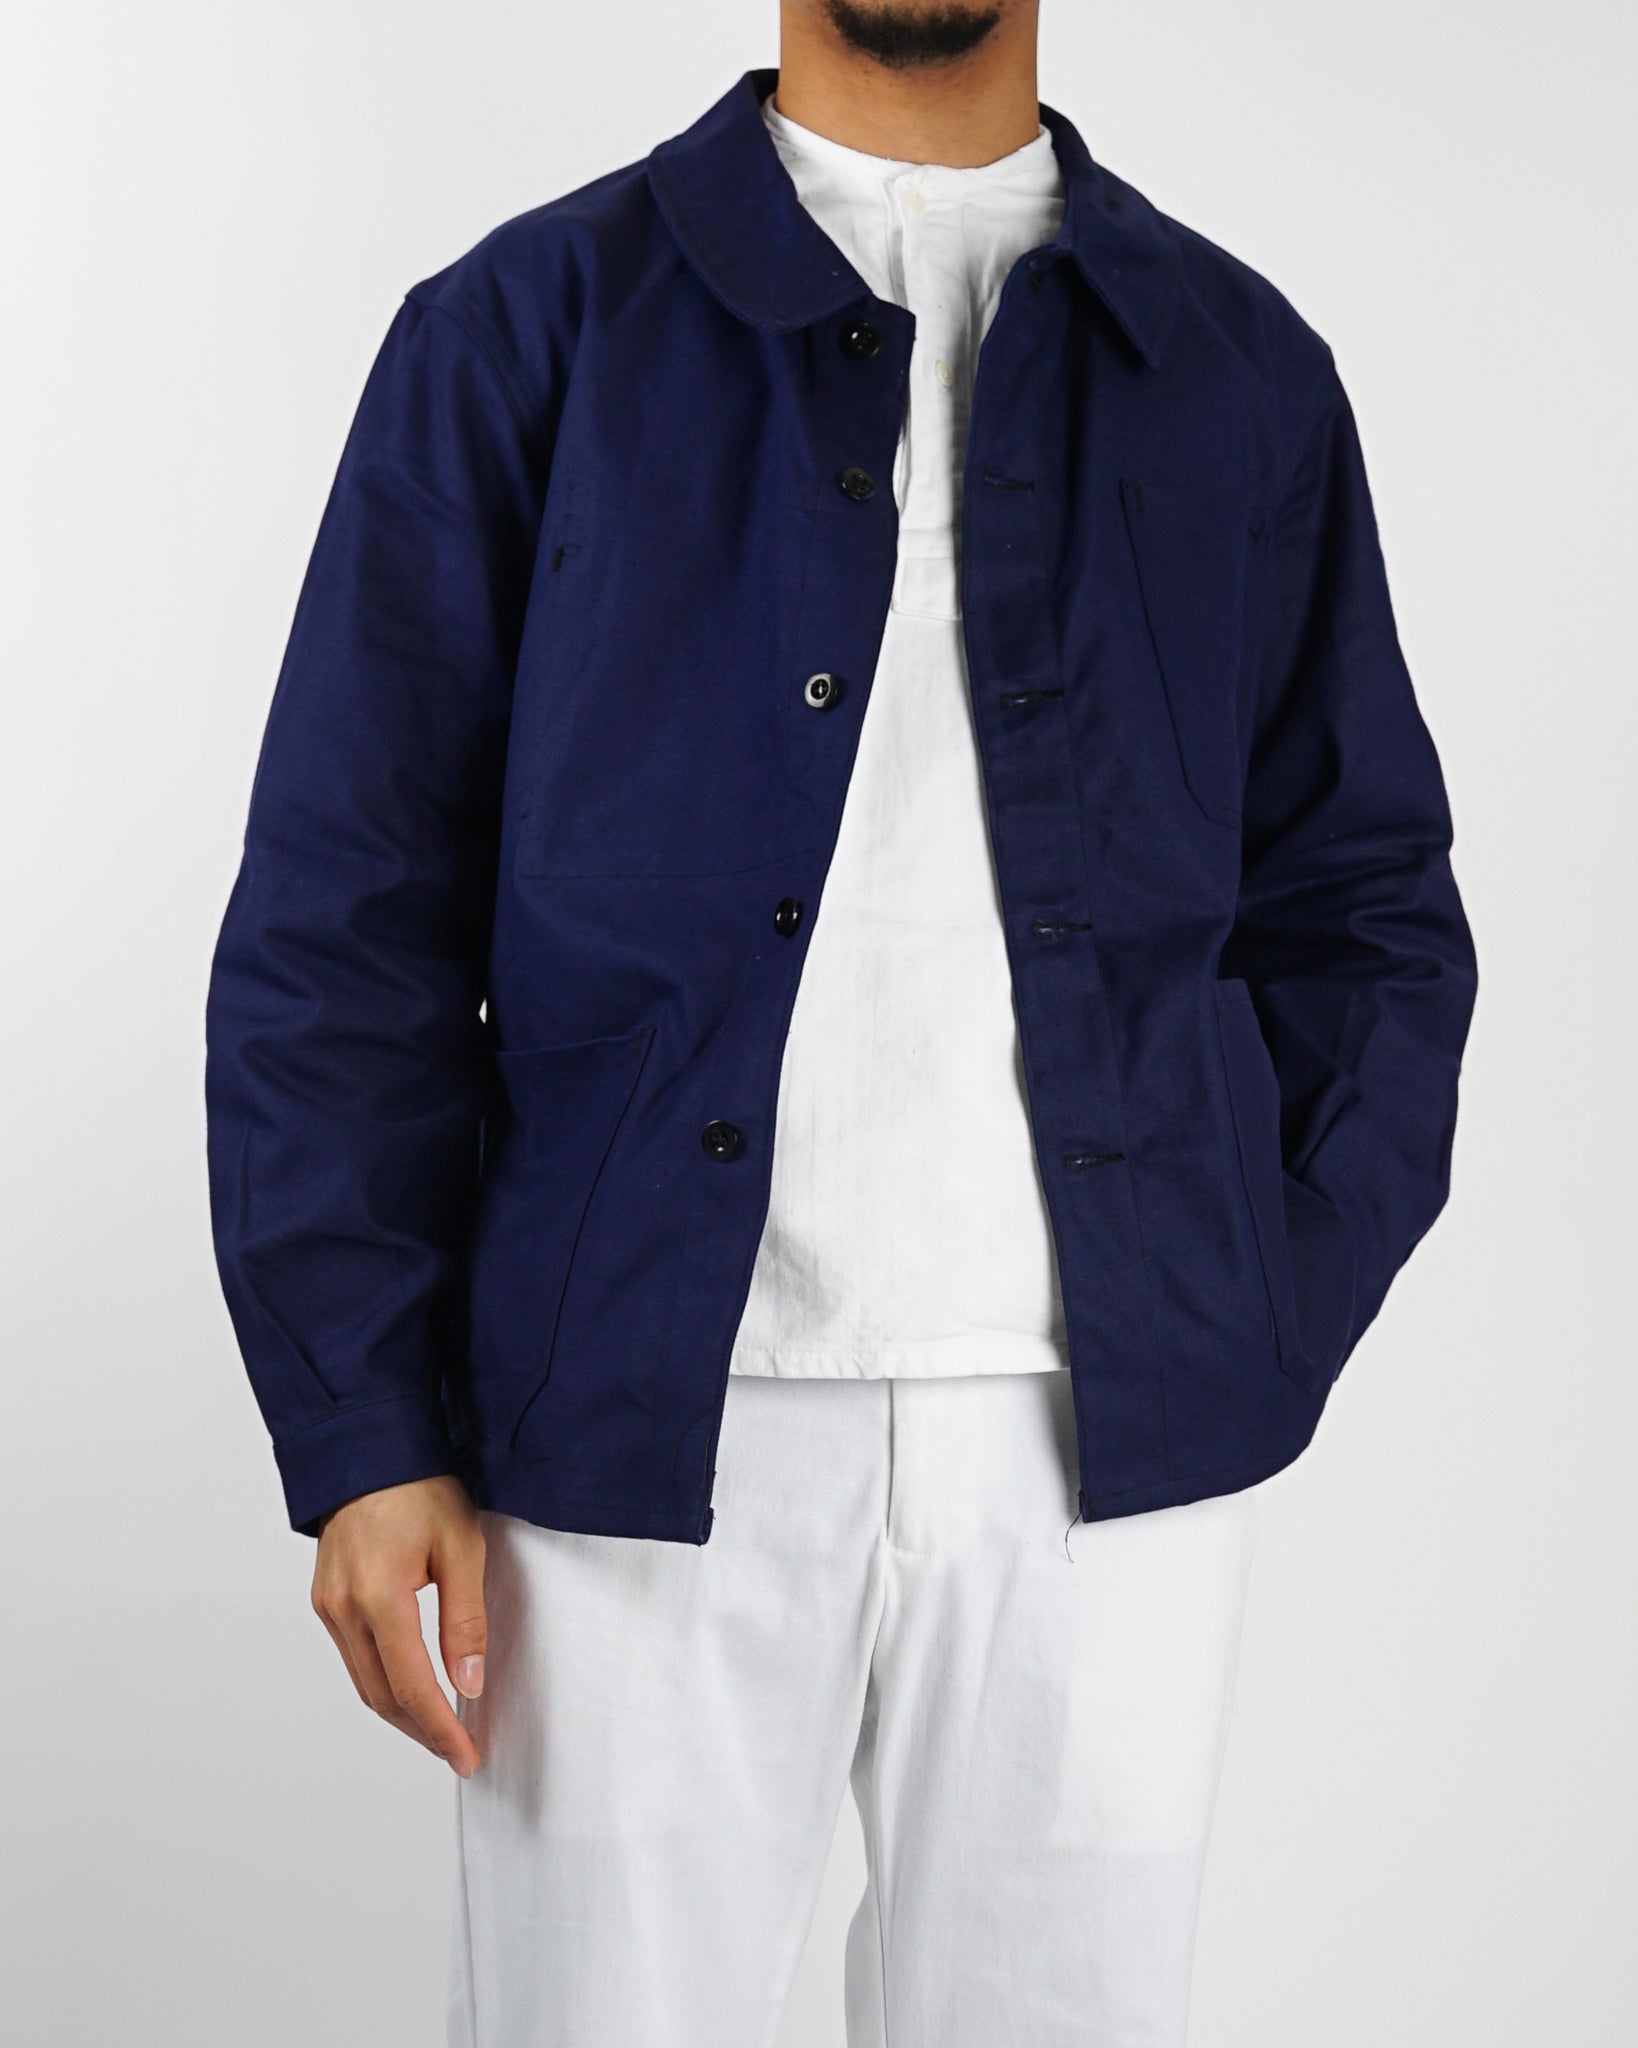 その為1つを出品いたしますMiyagi Hidetaka French work jacket - ブルゾン